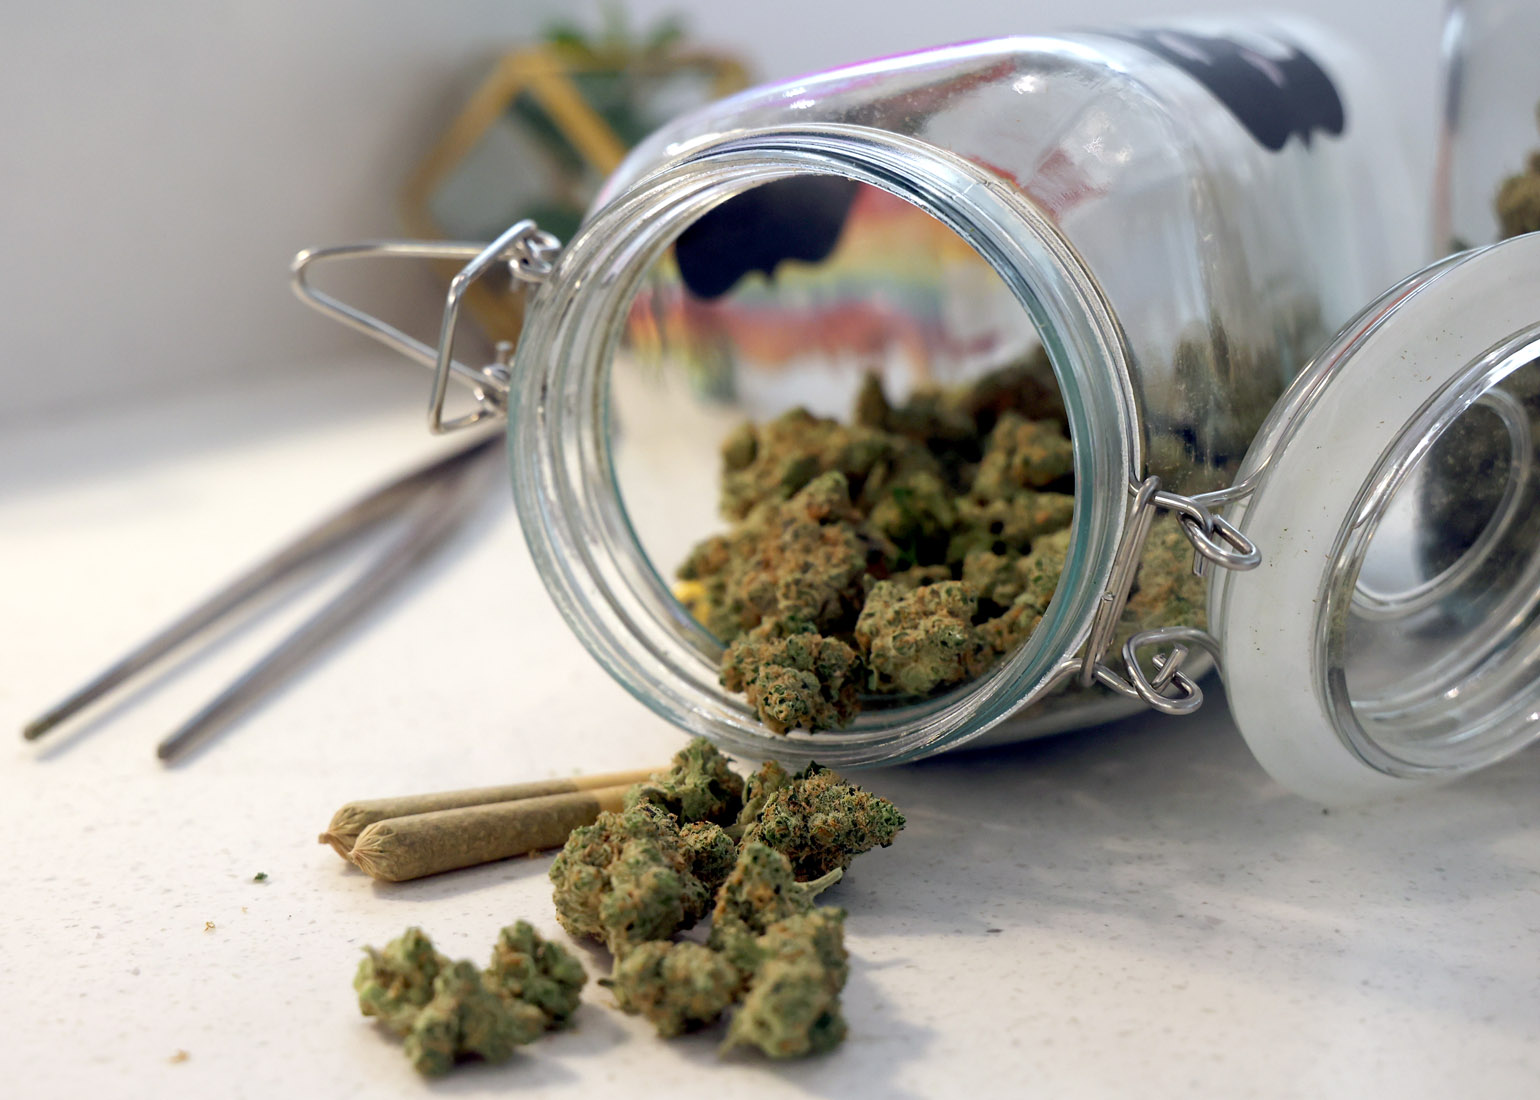 Springfield marijuana microbusiness has license revoked by regulator